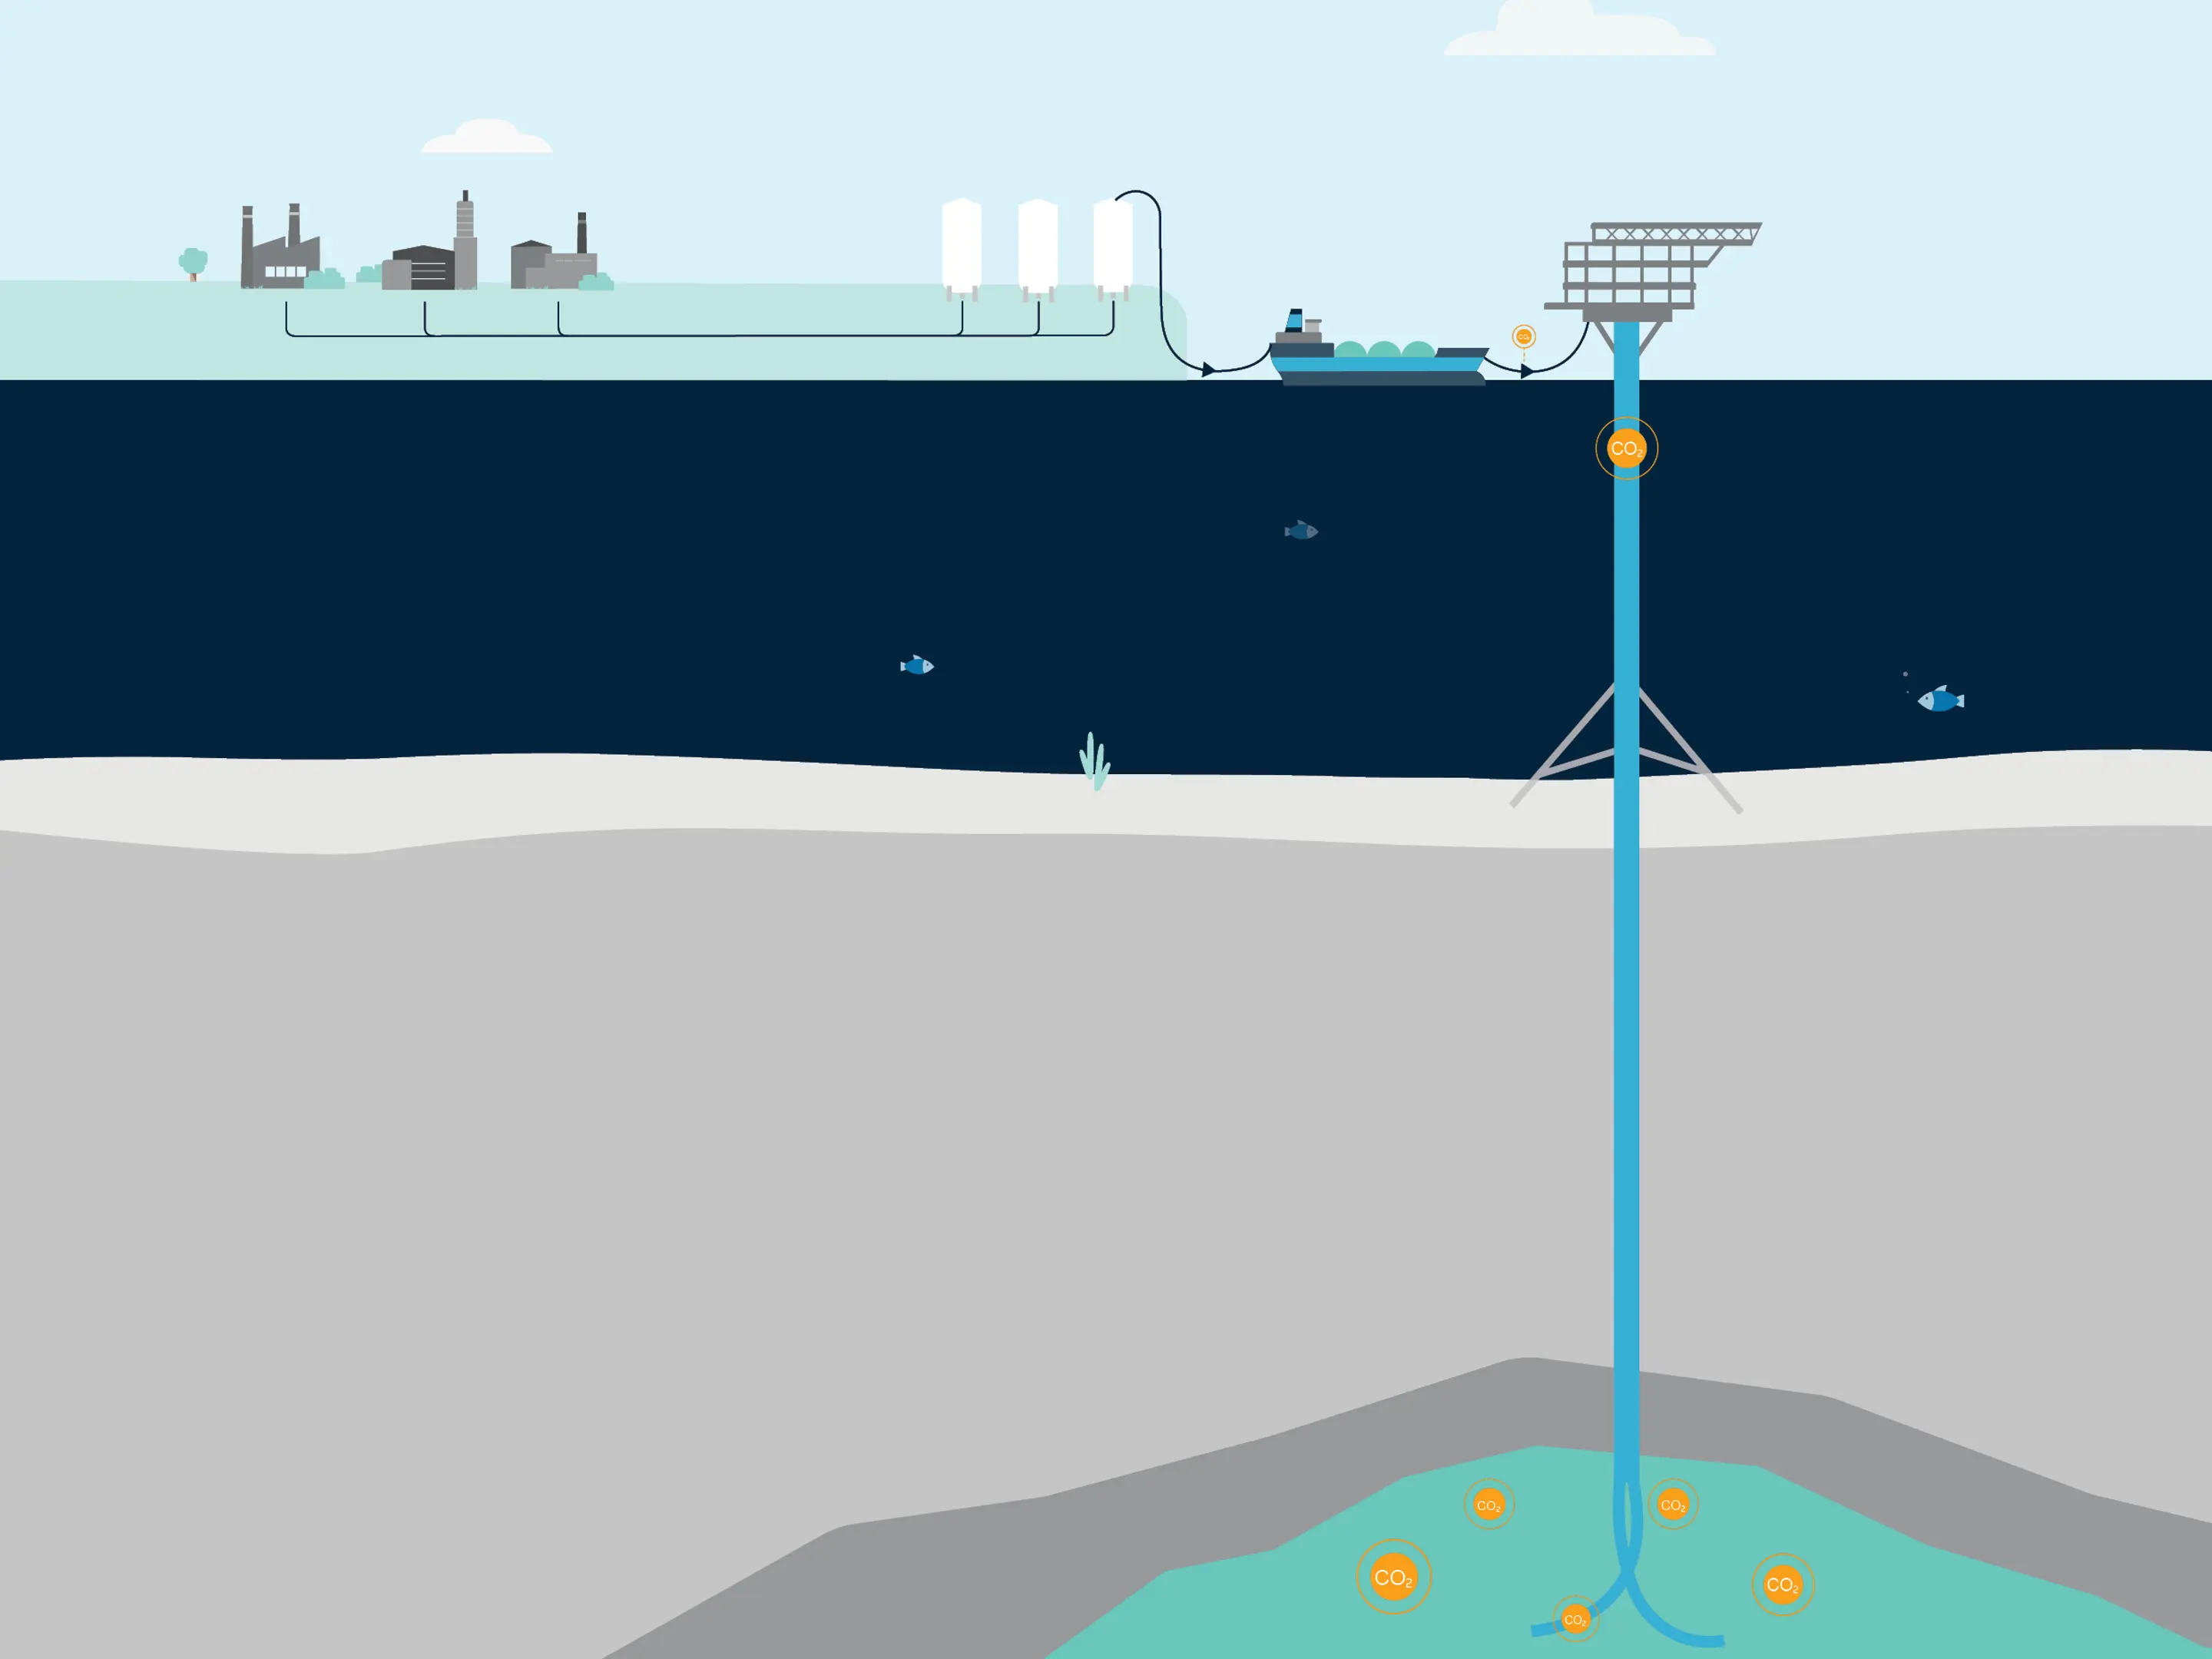 丹麦改造了一个旧的石油钻井平台 用耗尽的油田实现碳封存